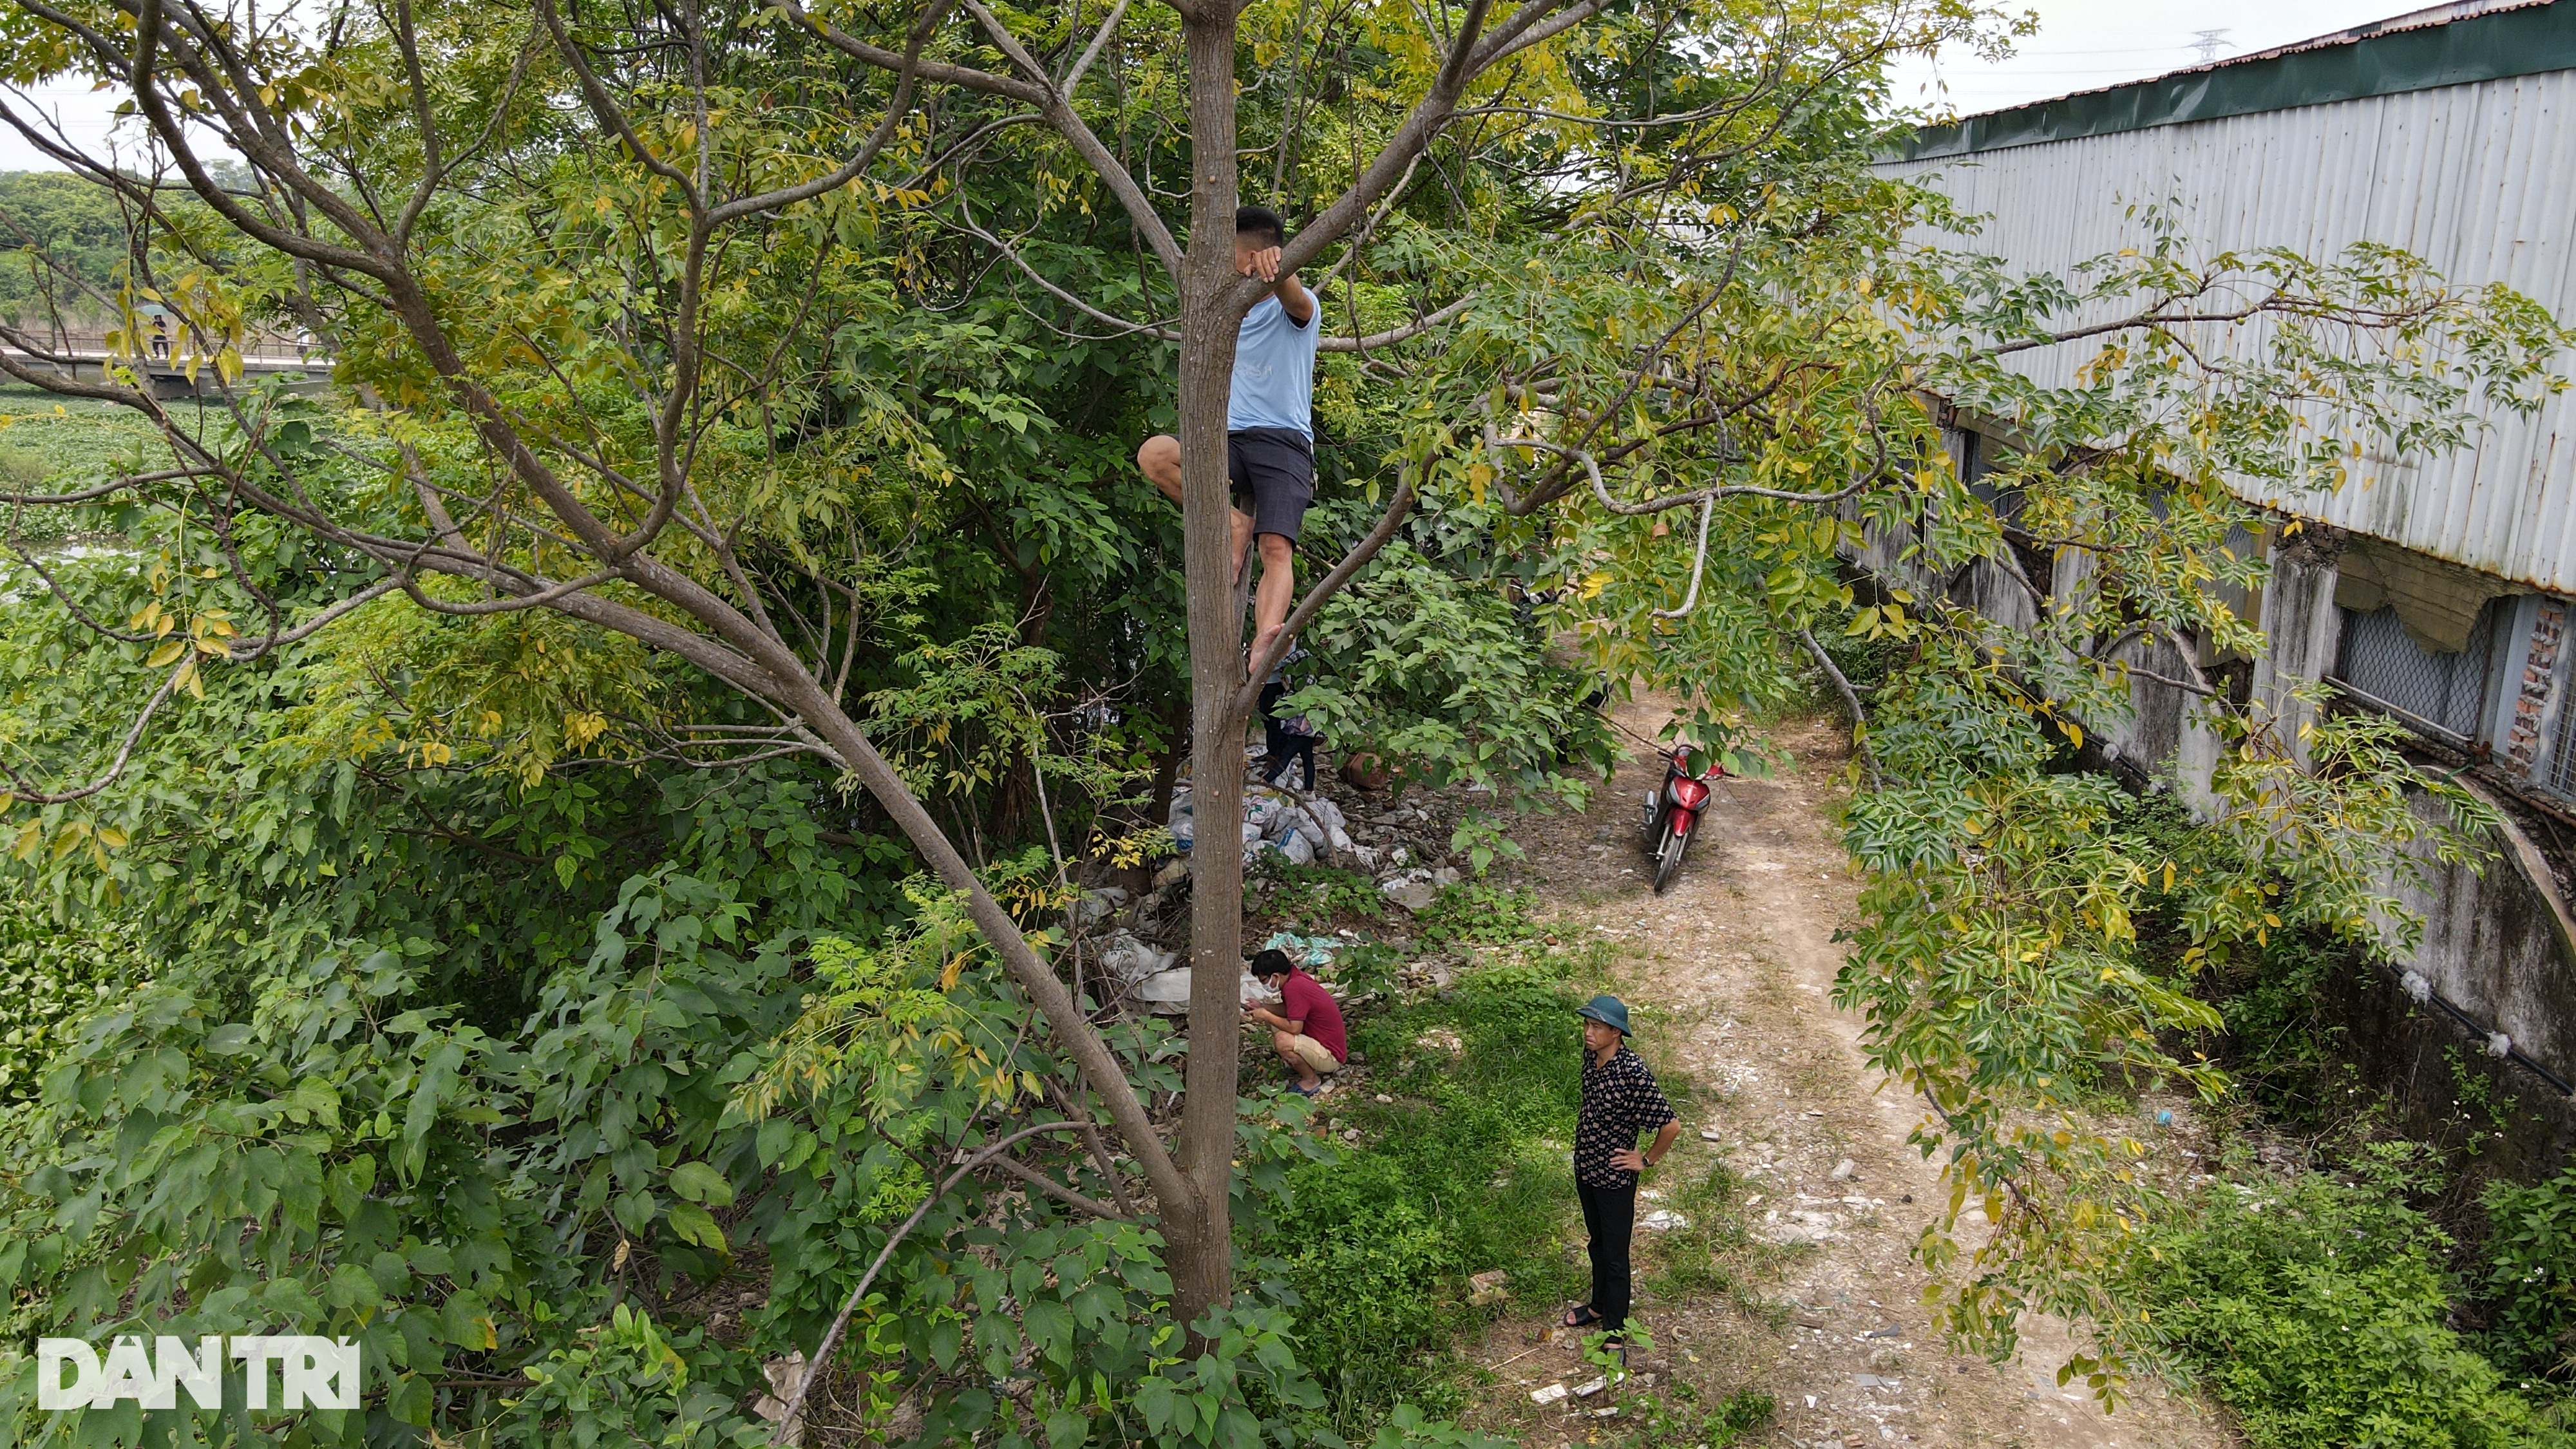 Trèo lên ngọn cây livestream vụ tìm kiếm cô gái mất tích ở Hà Nội - 8